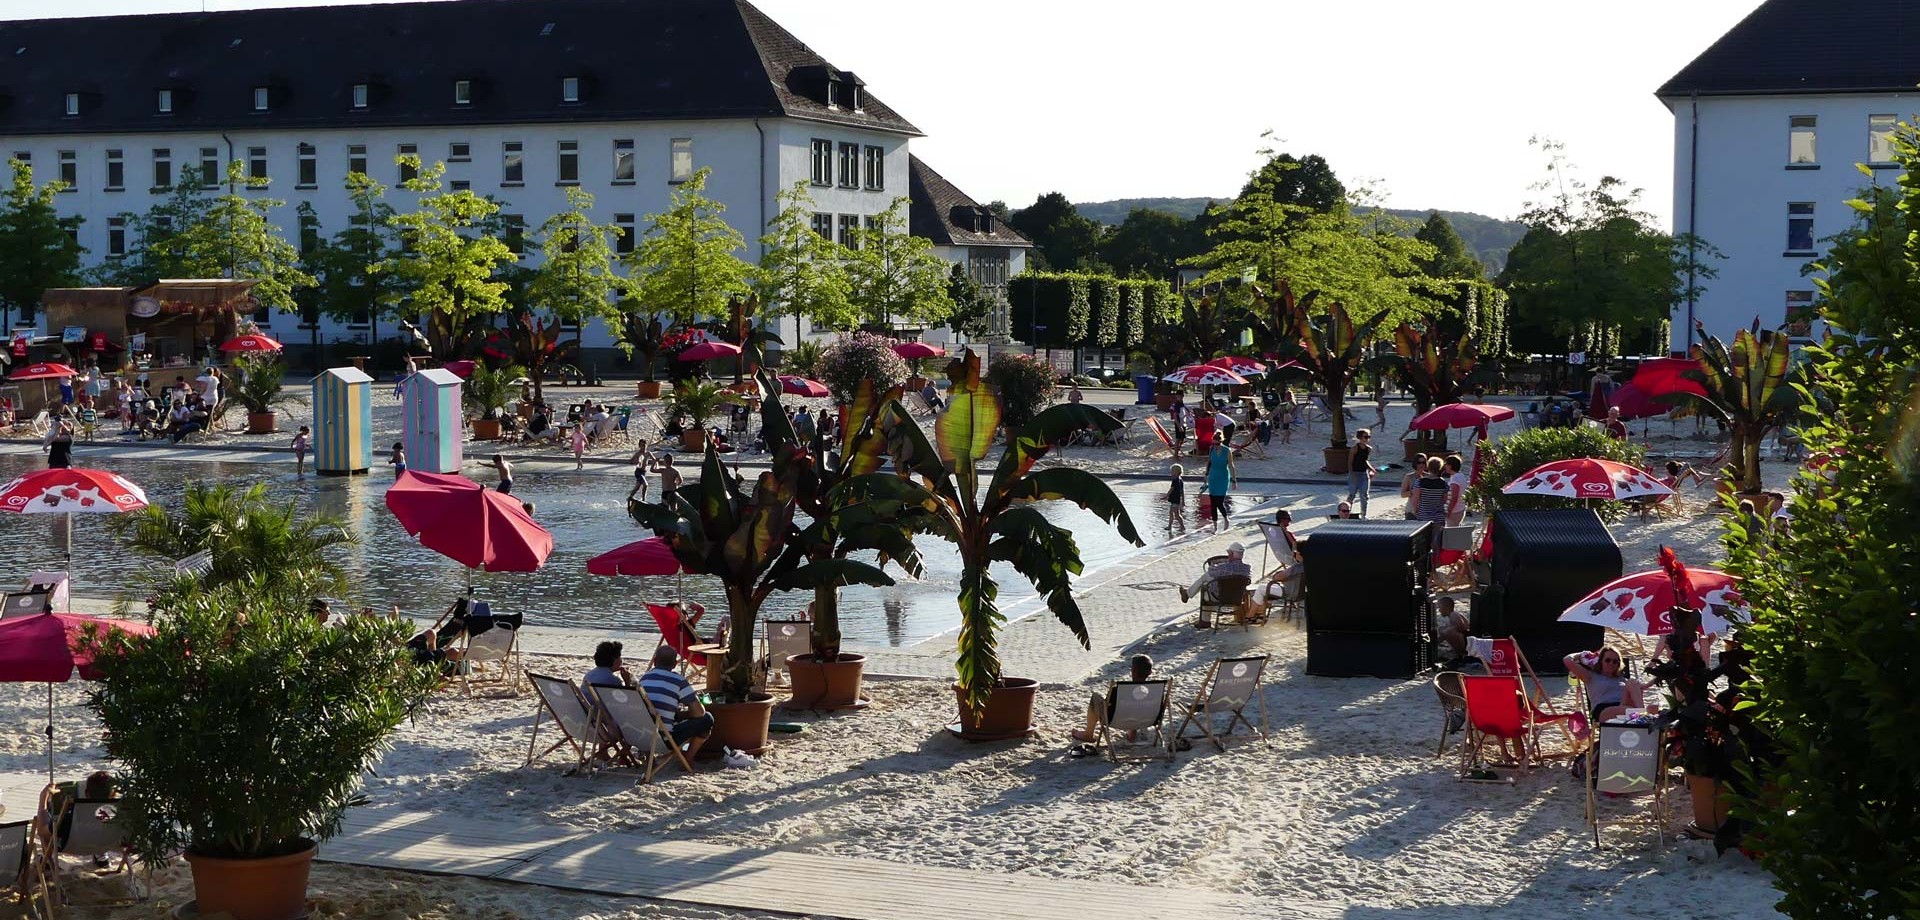 Der Himmelsspiegel im Sauerlandpark Hemer lädt als Wasserspielplatz zum Planschen ein. Drum herum befinden sich zahlreiche Strandsessel zum Entspannen.